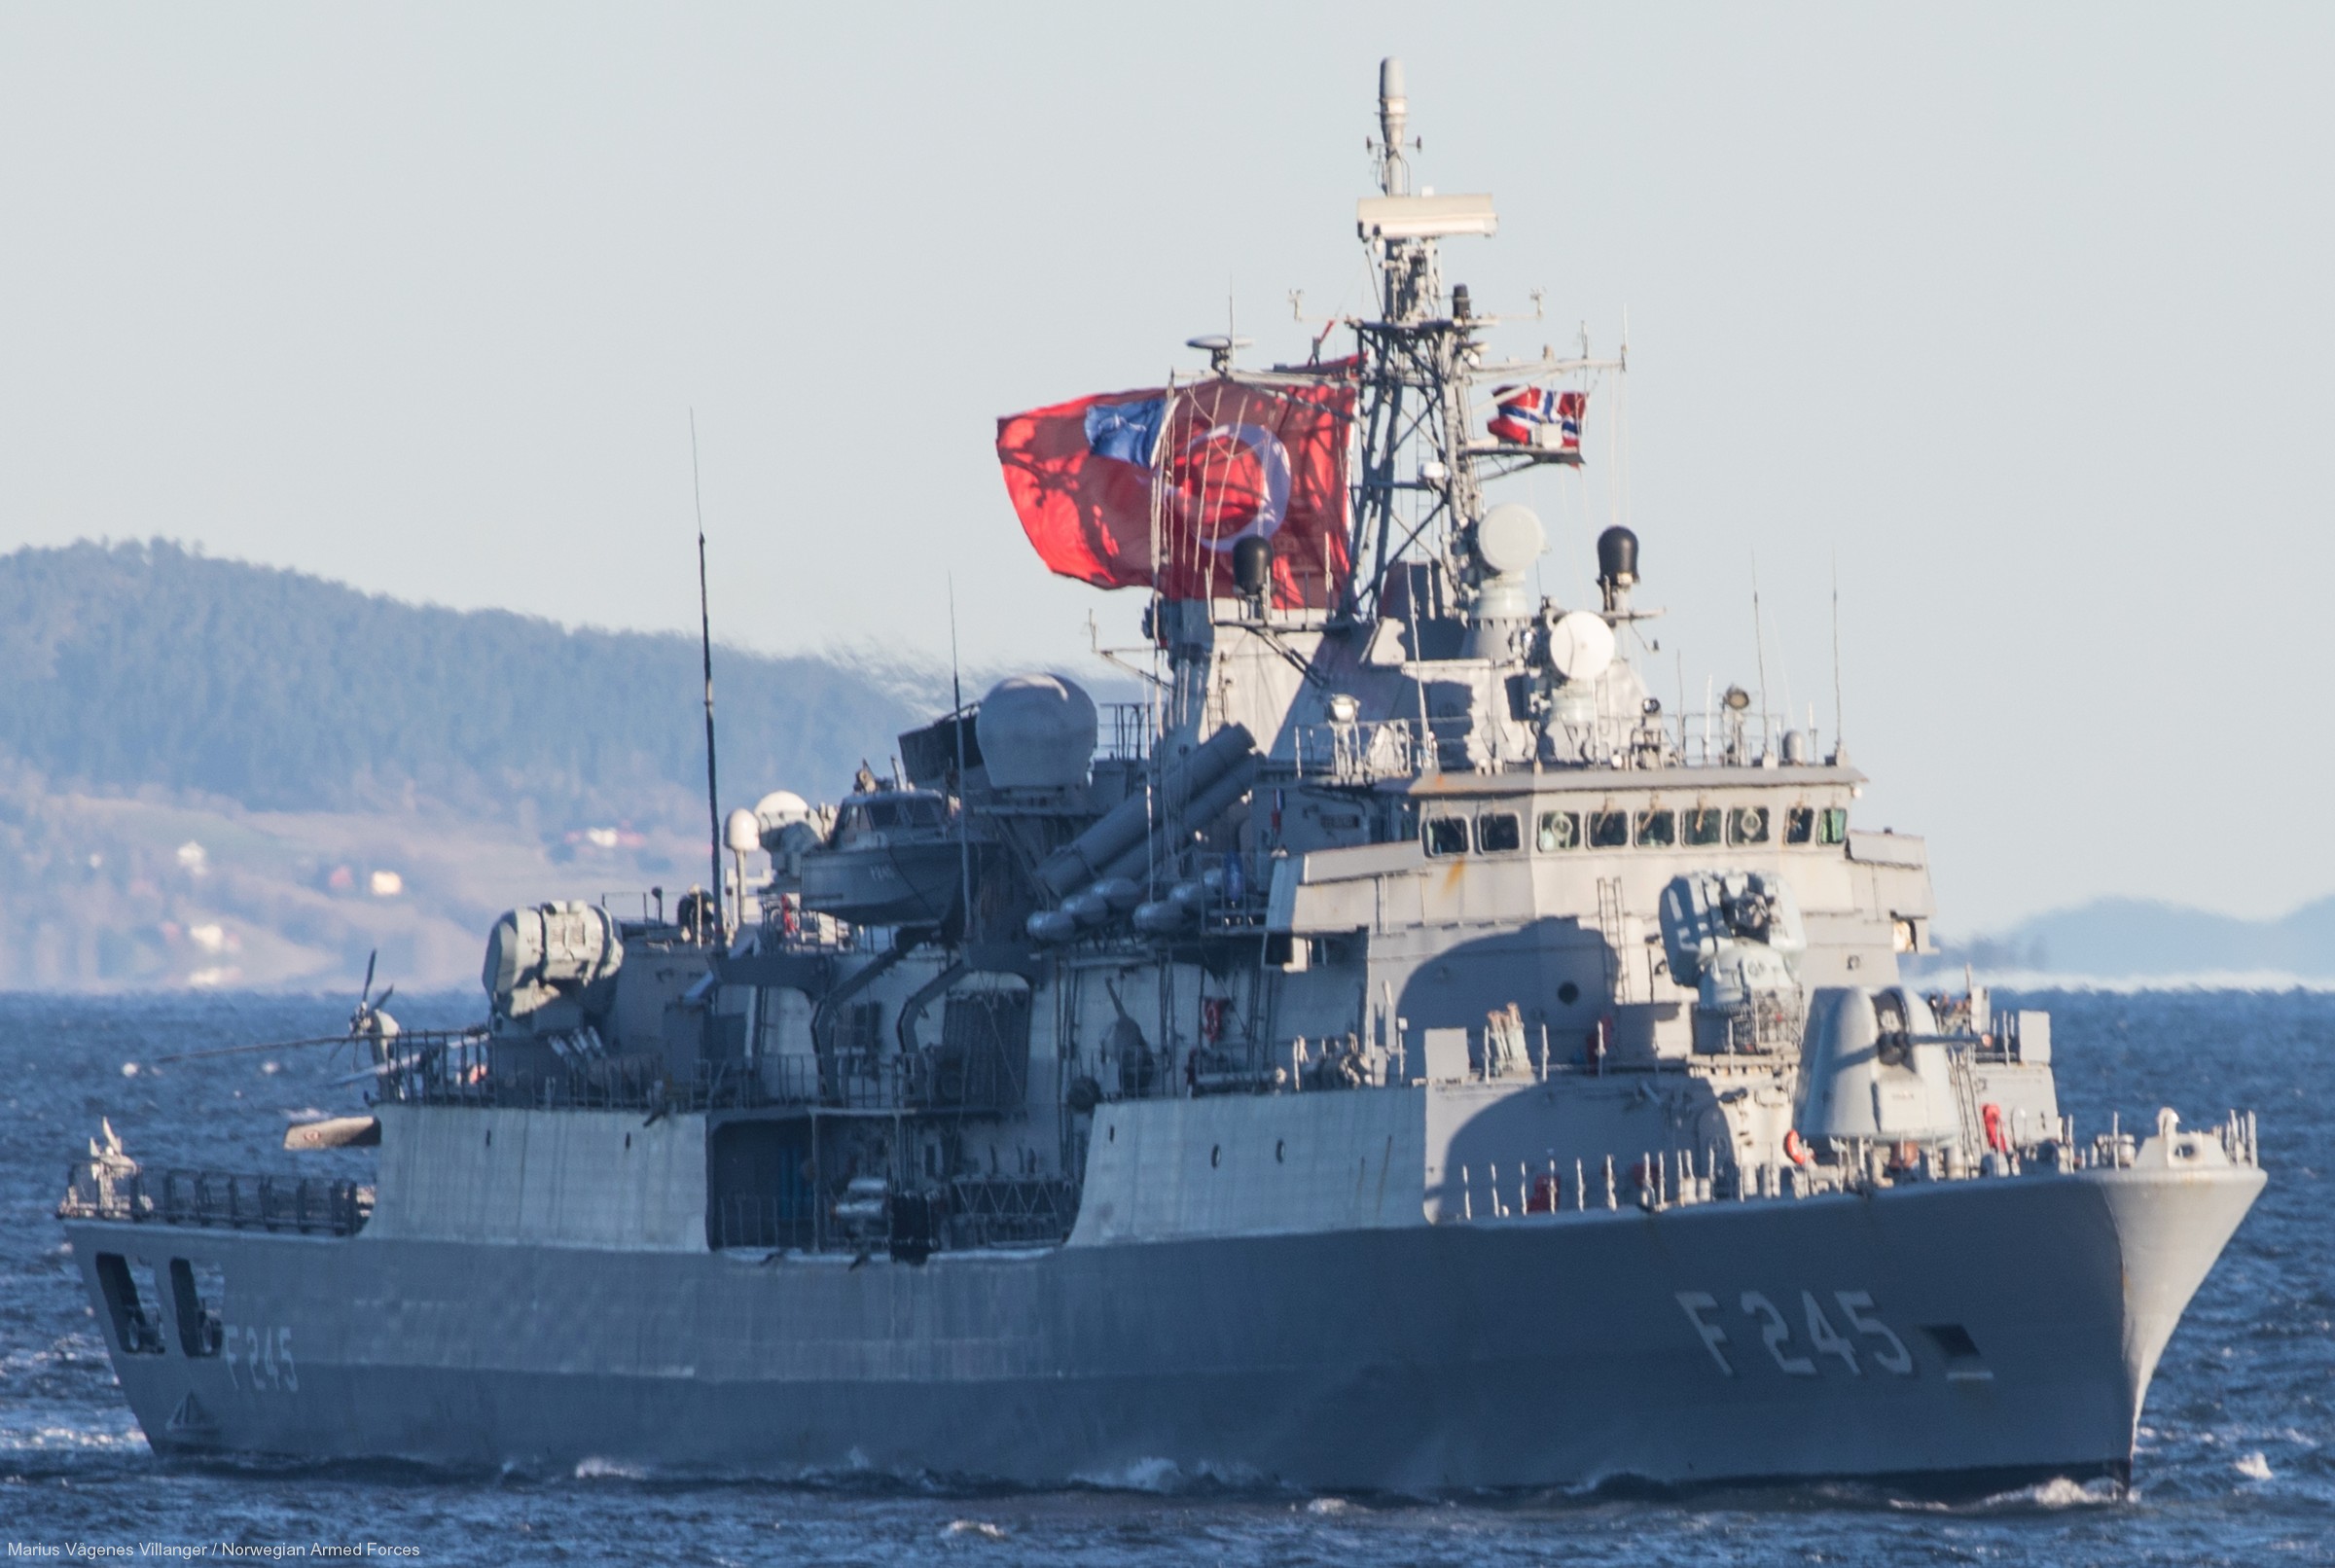 f-245 tcg orucreis barbaros class frigate meko-200tn turkish navy türk deniz kuvvetleri 08